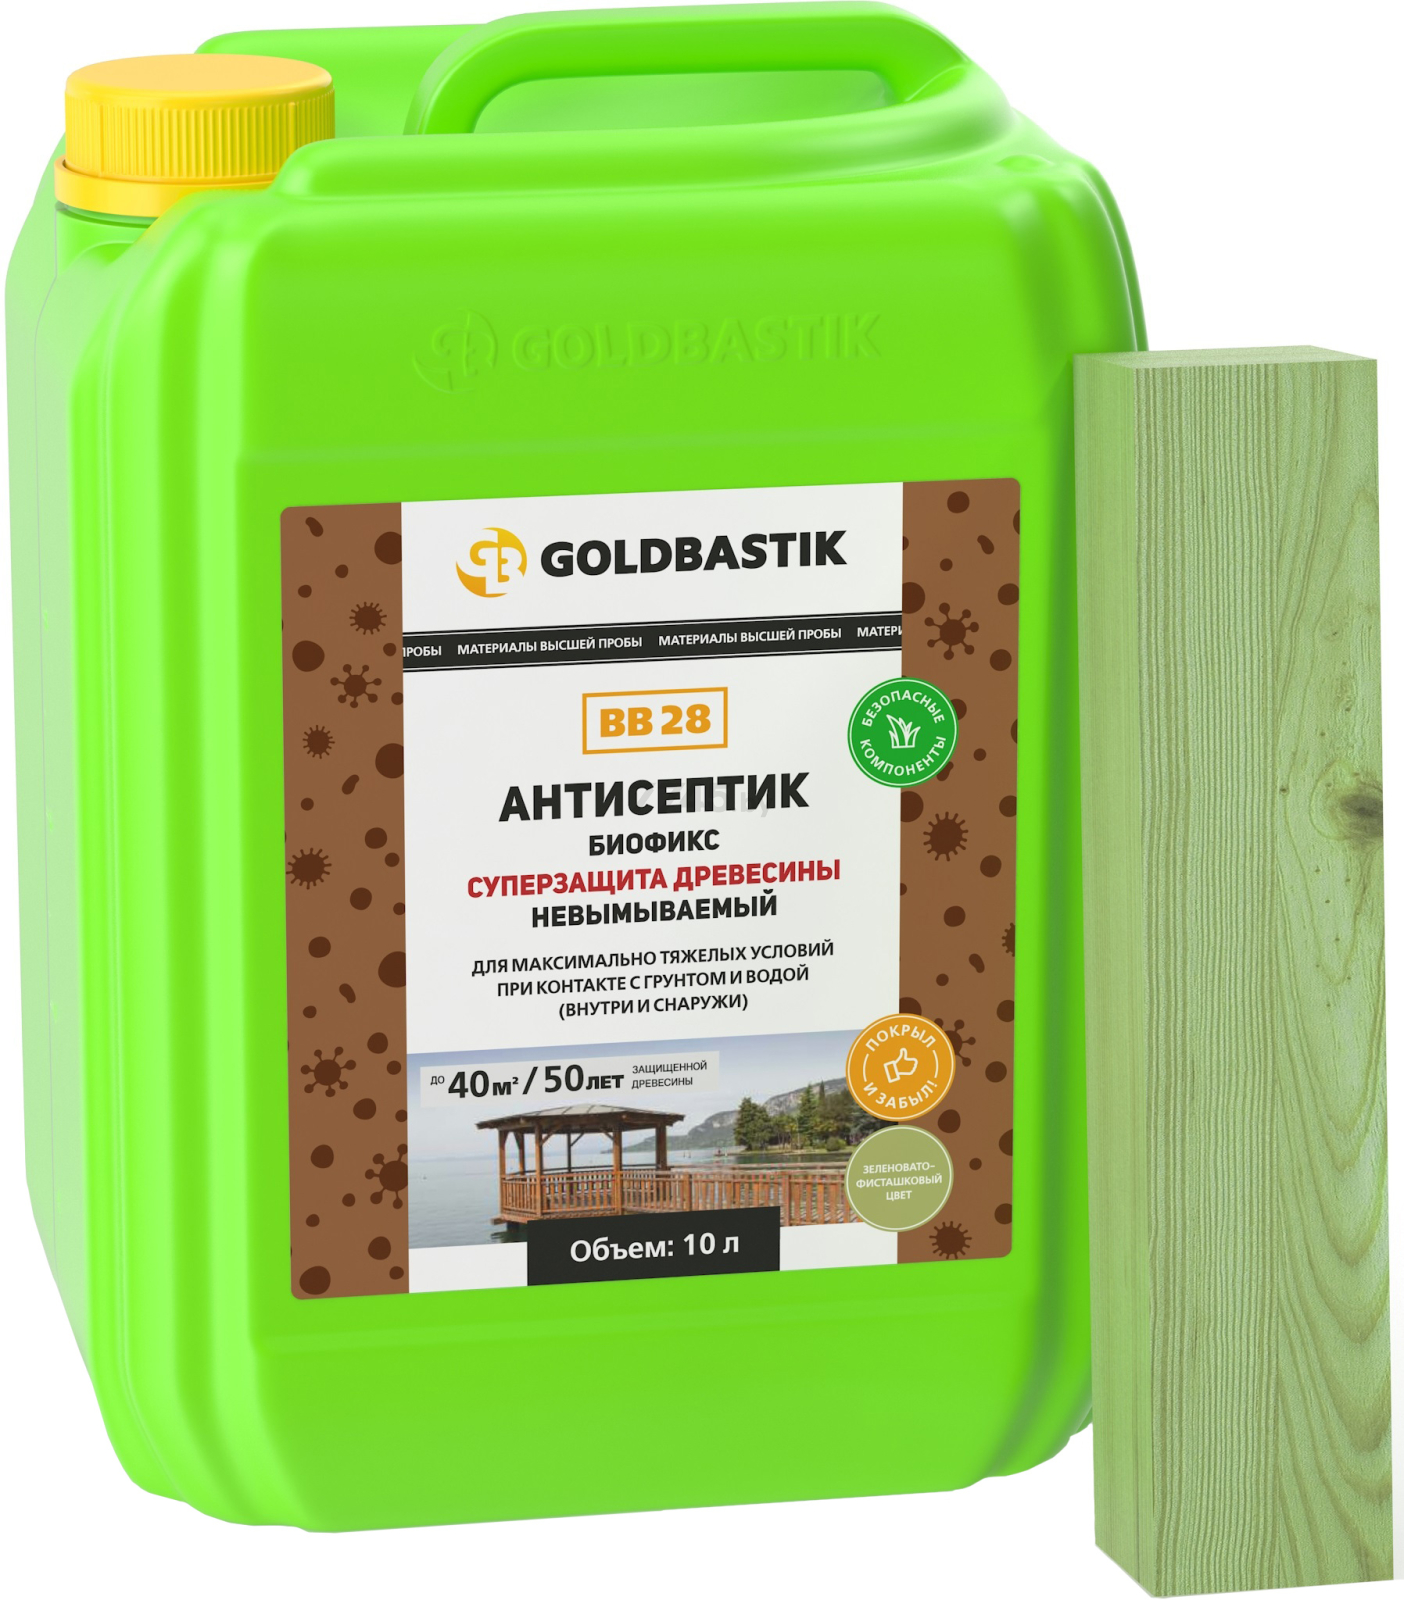 Антисептик GOLDBASTIK Биофикс Суперзащита древесины 5 л (ВВ 28)